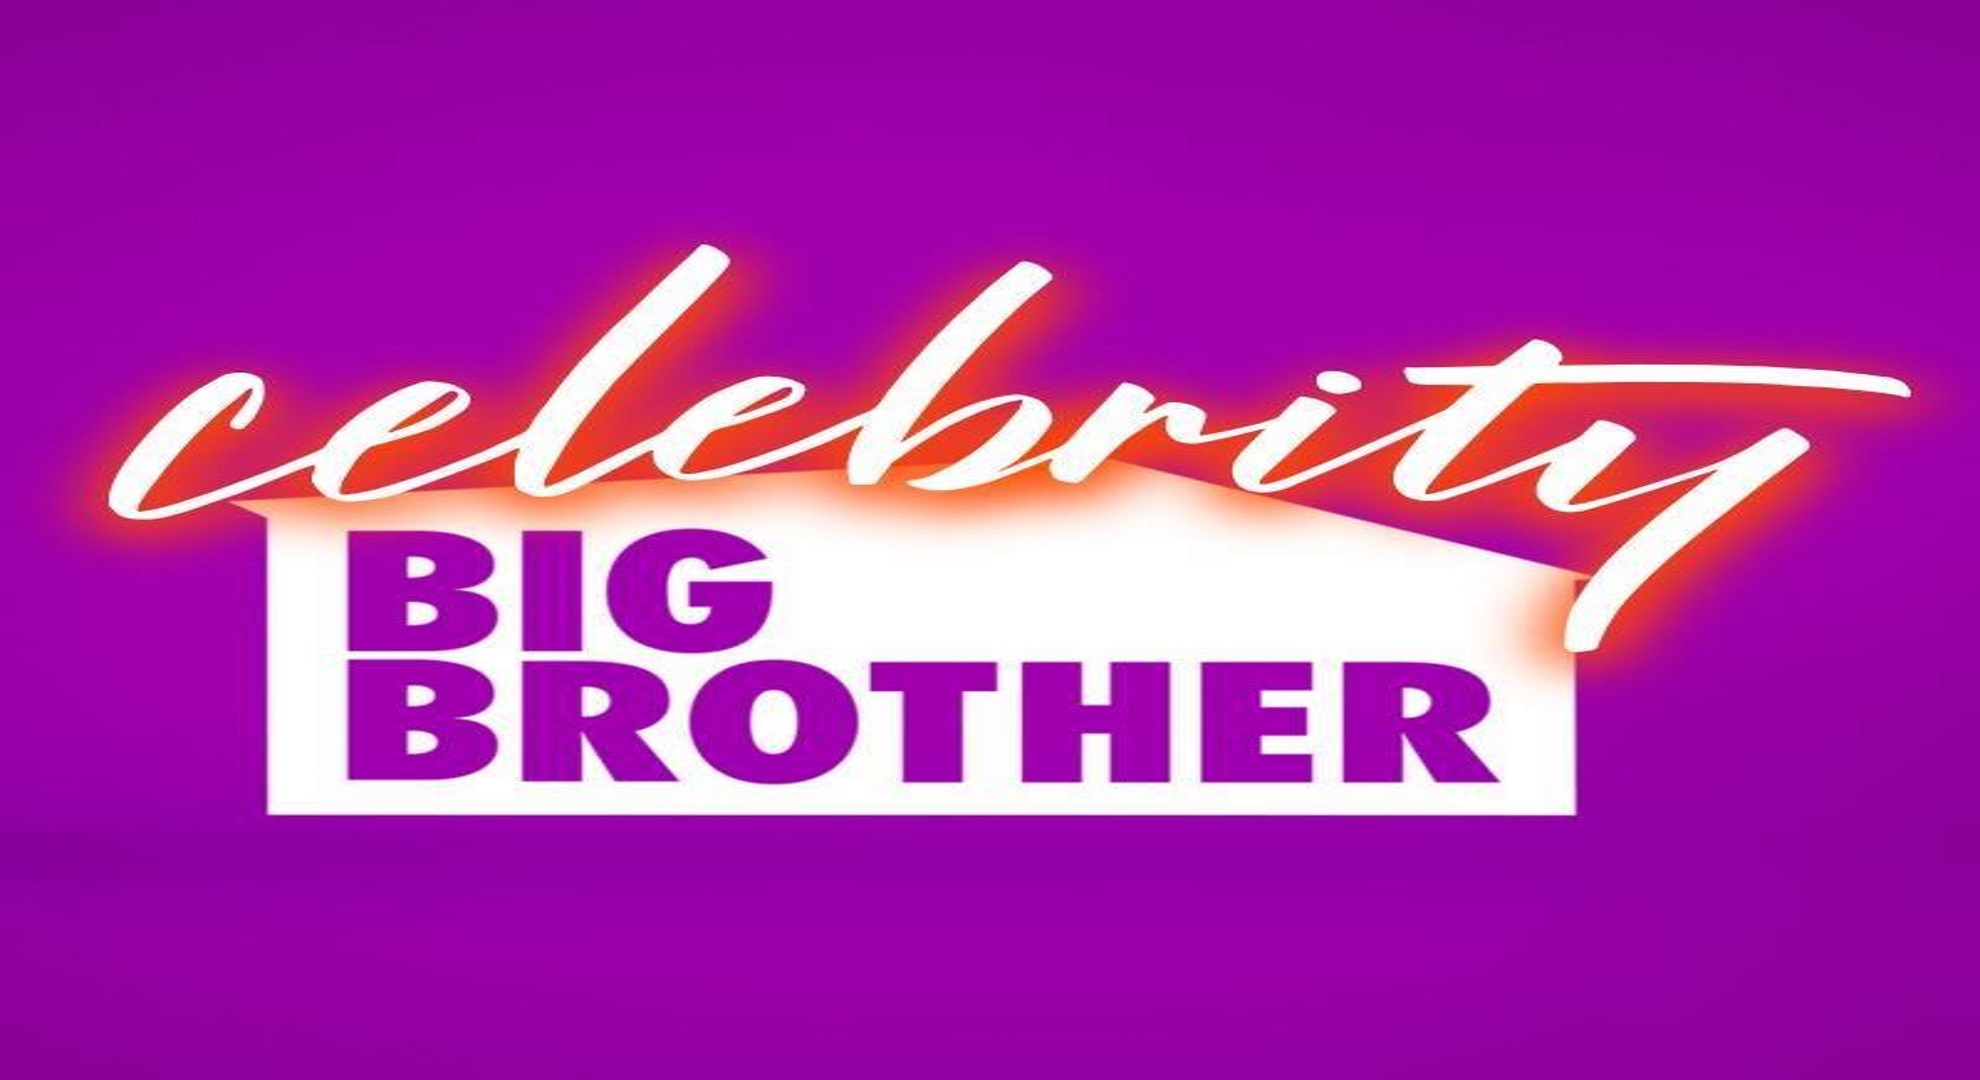 Big-Brother-Celebrity-Logo.jpg